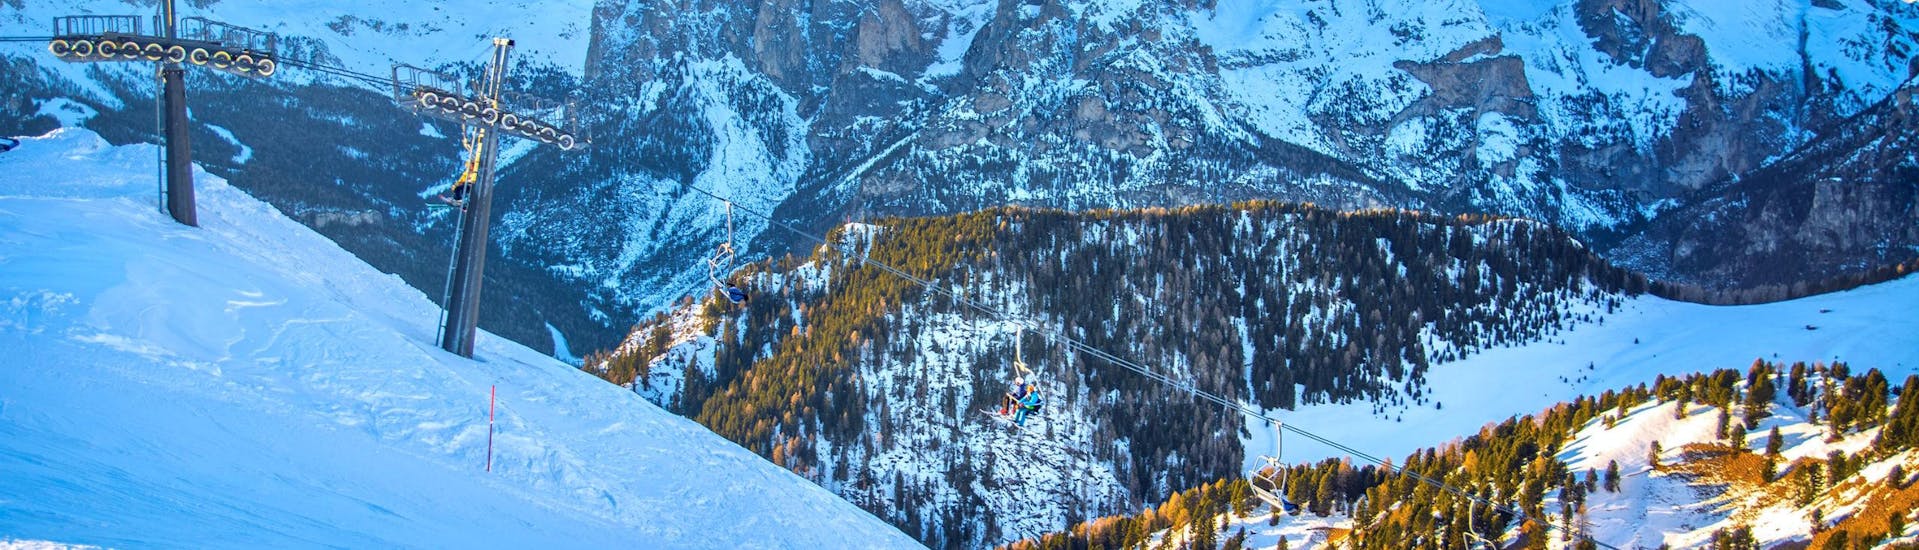 Un gruppo di scitatori sta raggiungendo la cima delle piste a Vigo di Fassa dove prenderanno parte alle lezioni di sci di una delle scuole di sci locali.